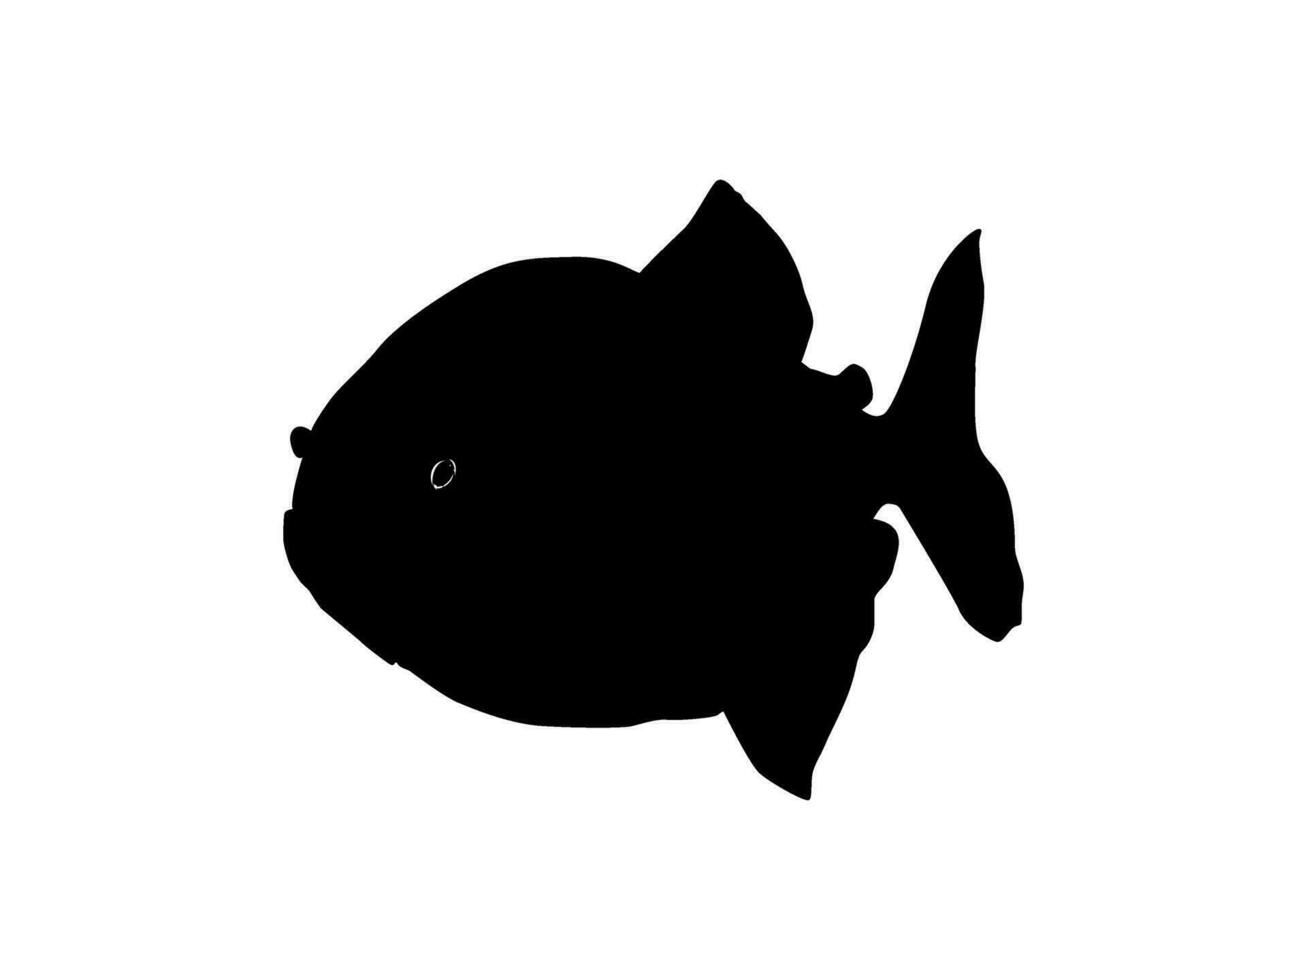 piranha pesce silhouette, può uso per logo grammo, sito web, arte illustrazione, pittogramma, icona o grafico design elemento. vettore illustrazione